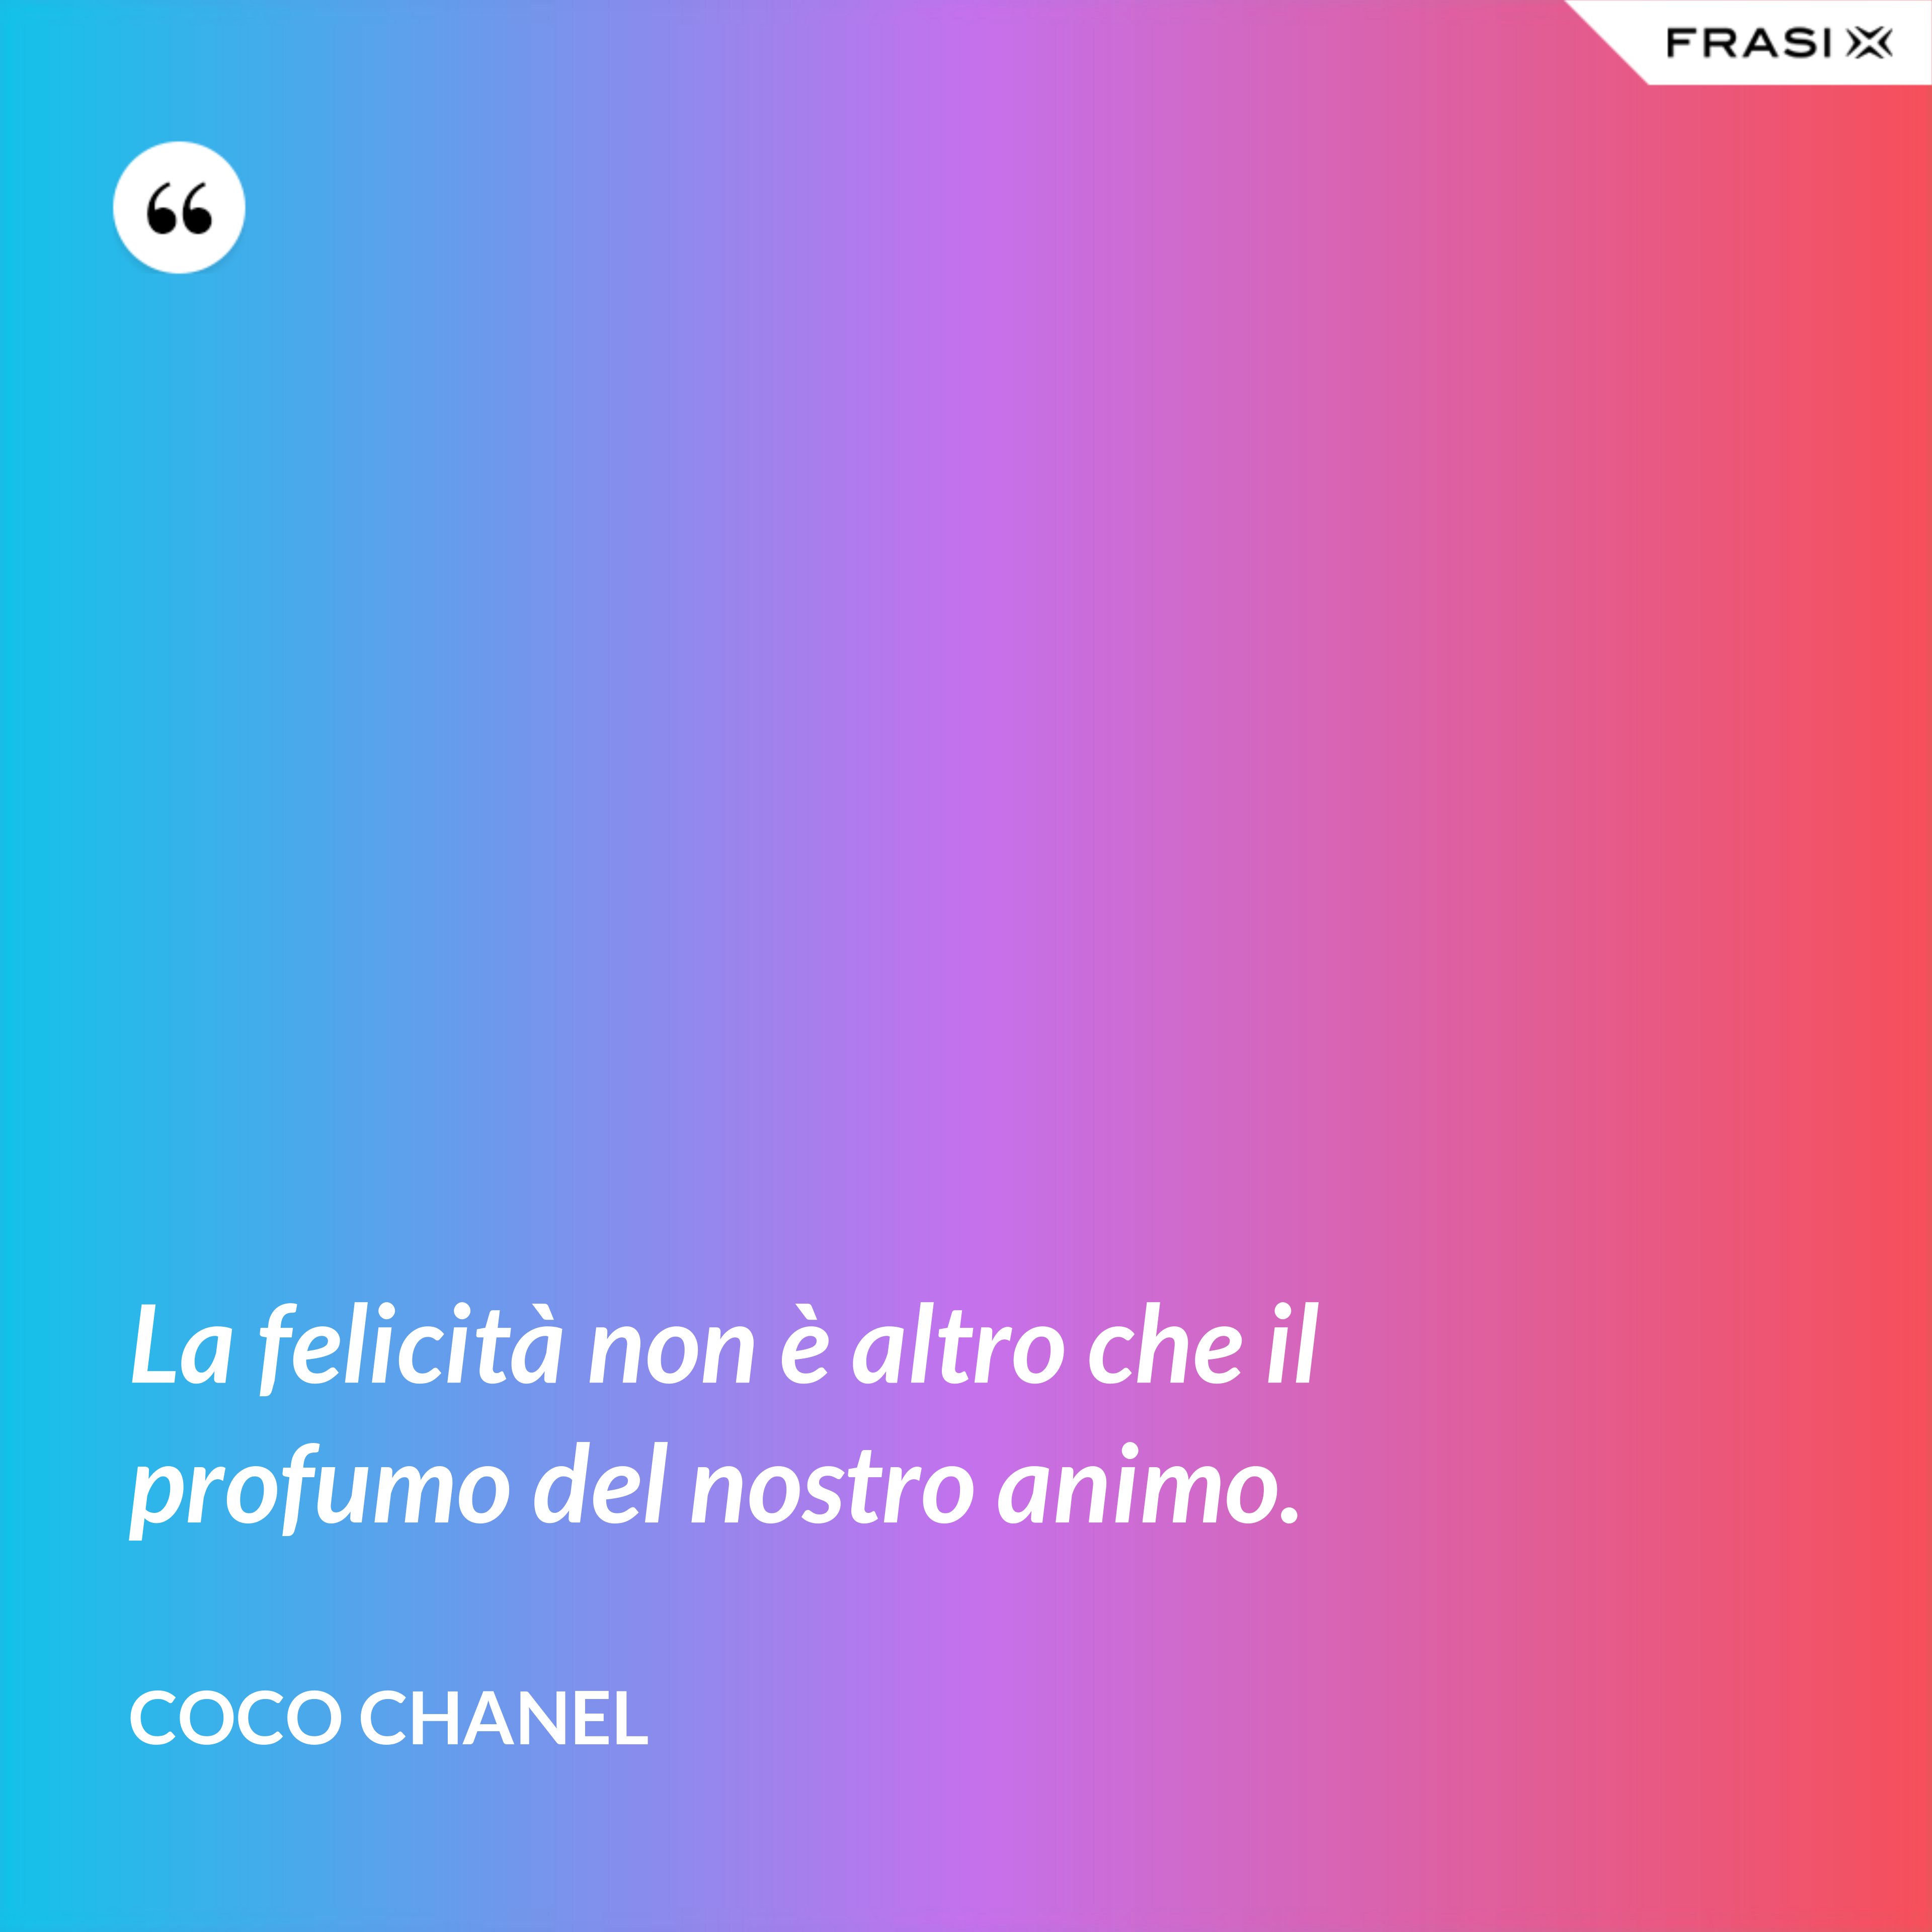 La felicità non è altro che il profumo del nostro animo. - Coco Chanel